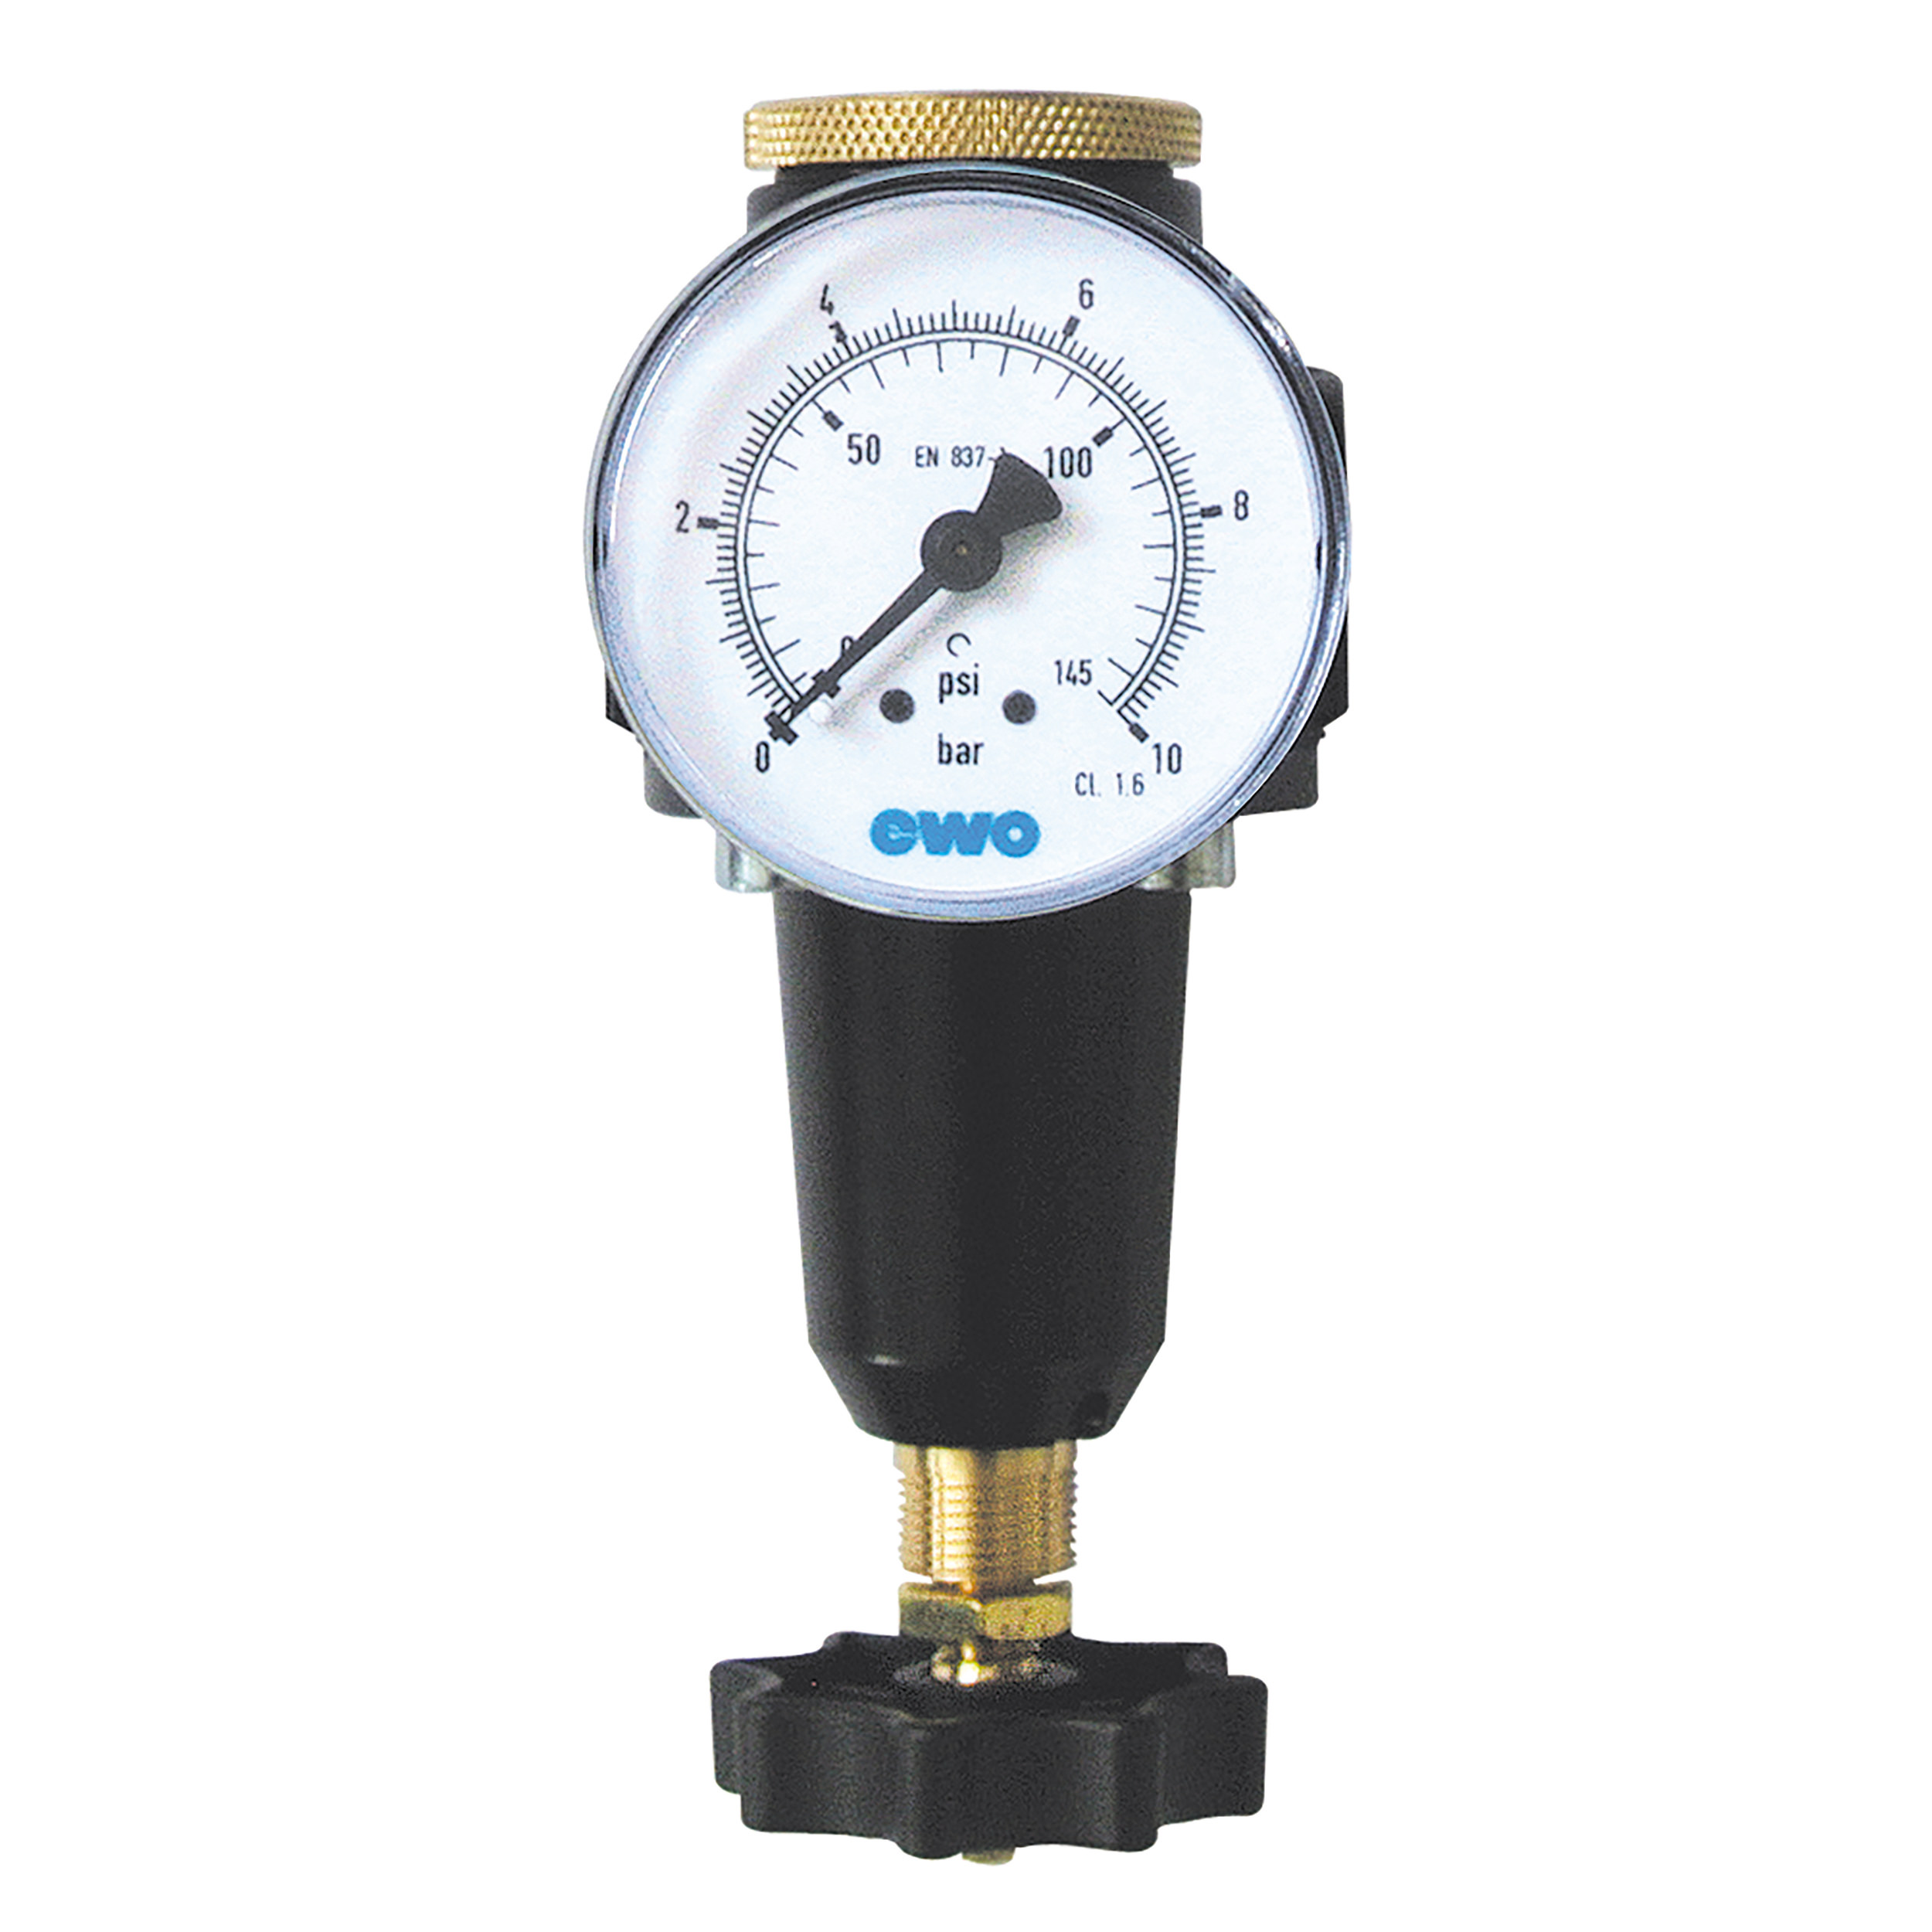 Precision pressure regulator, BG 30, G⅜, 7–145 psi, toggle, no gauge